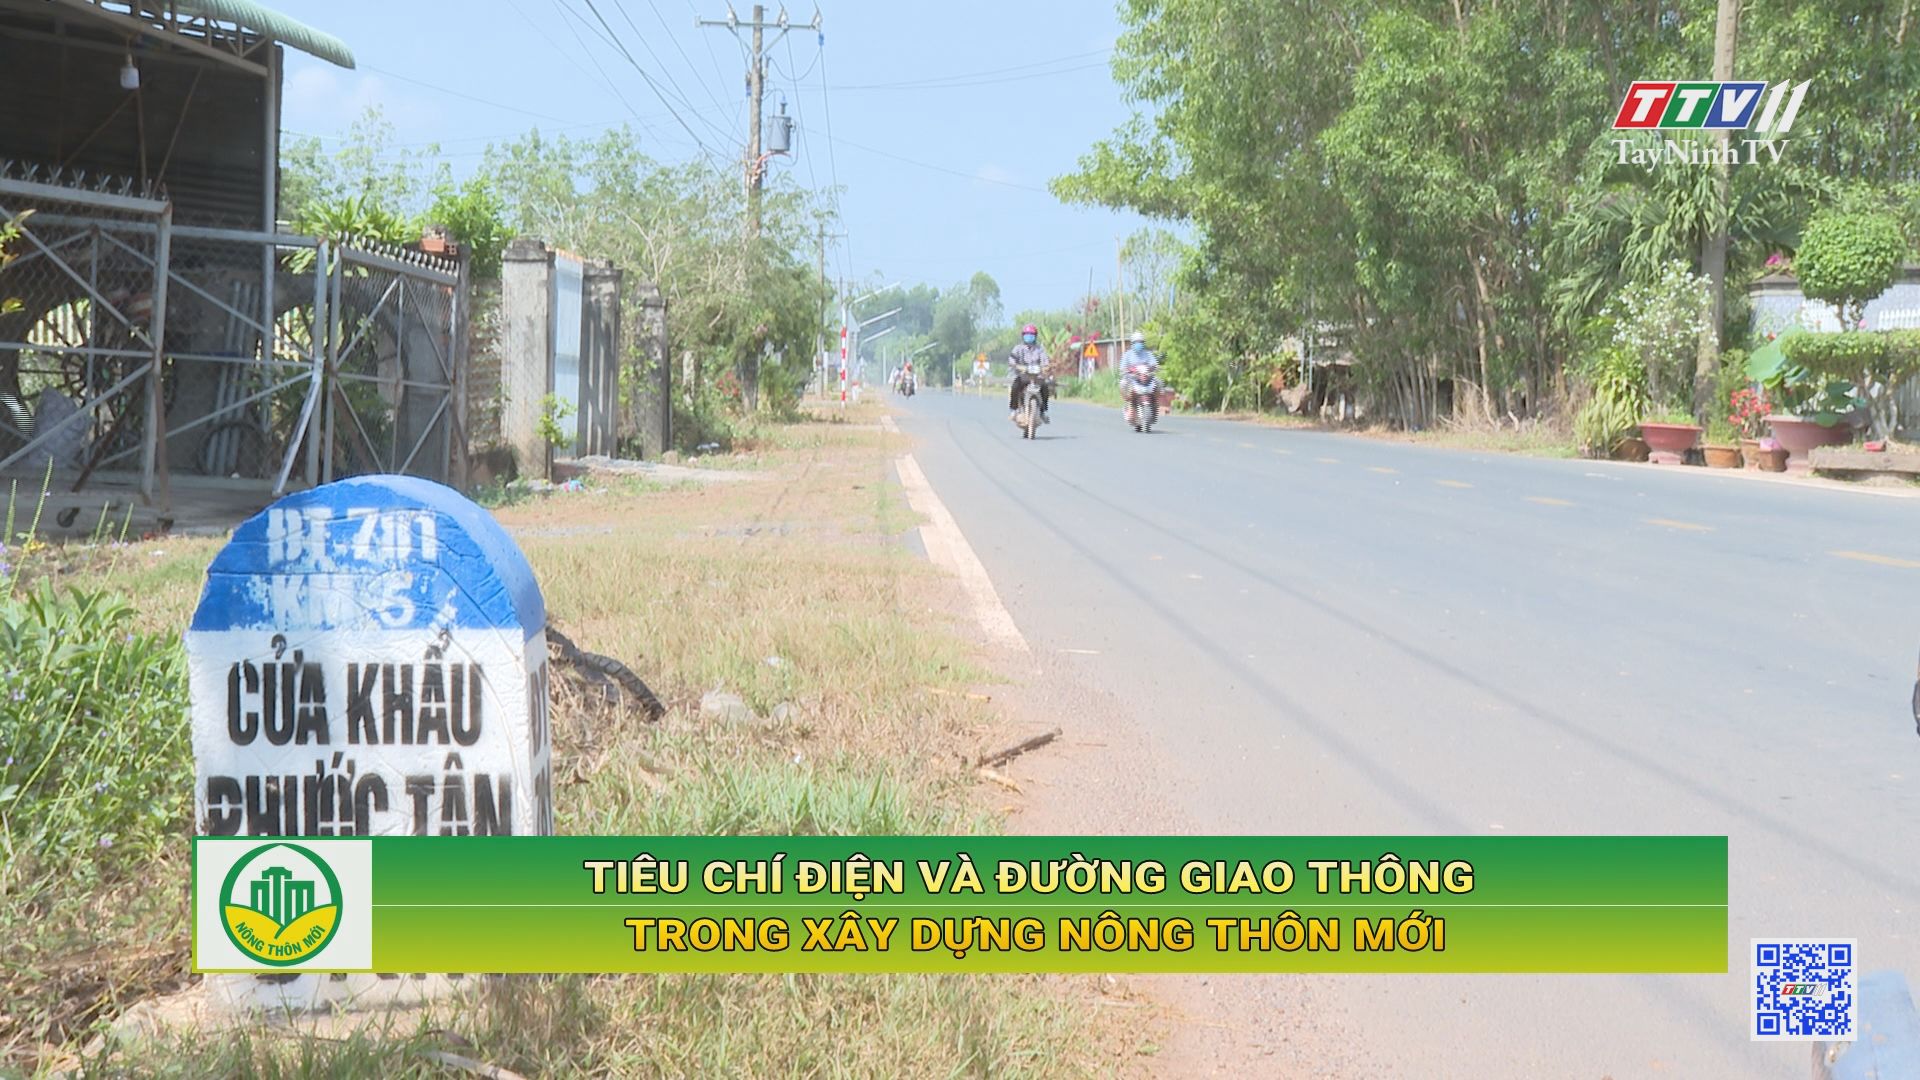 Tiêu chí điện và đường giao thông trong xây dựng nông thôn mới | TayNinhTV